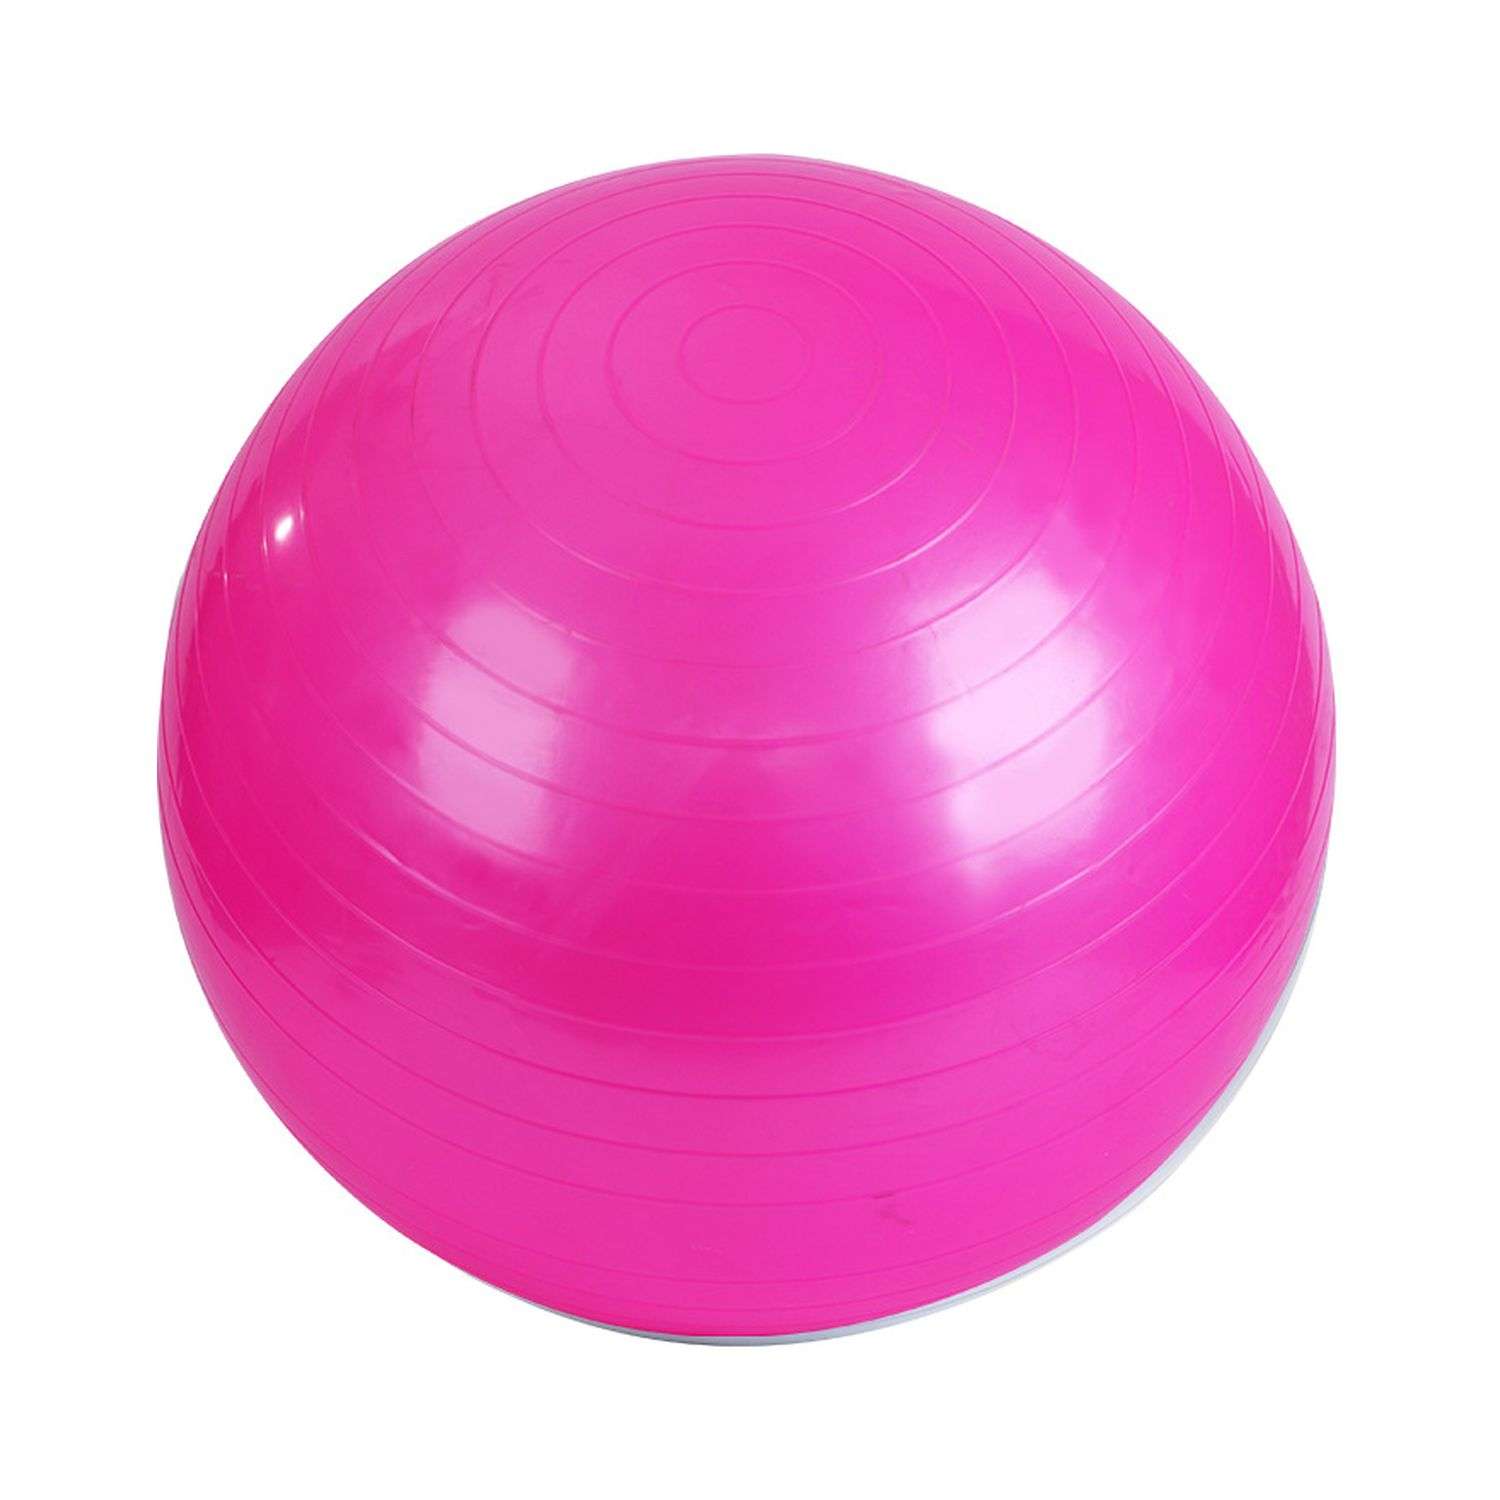 Фитбол Beroma с антивзрывным эффектом 65 см розовый - фото 1